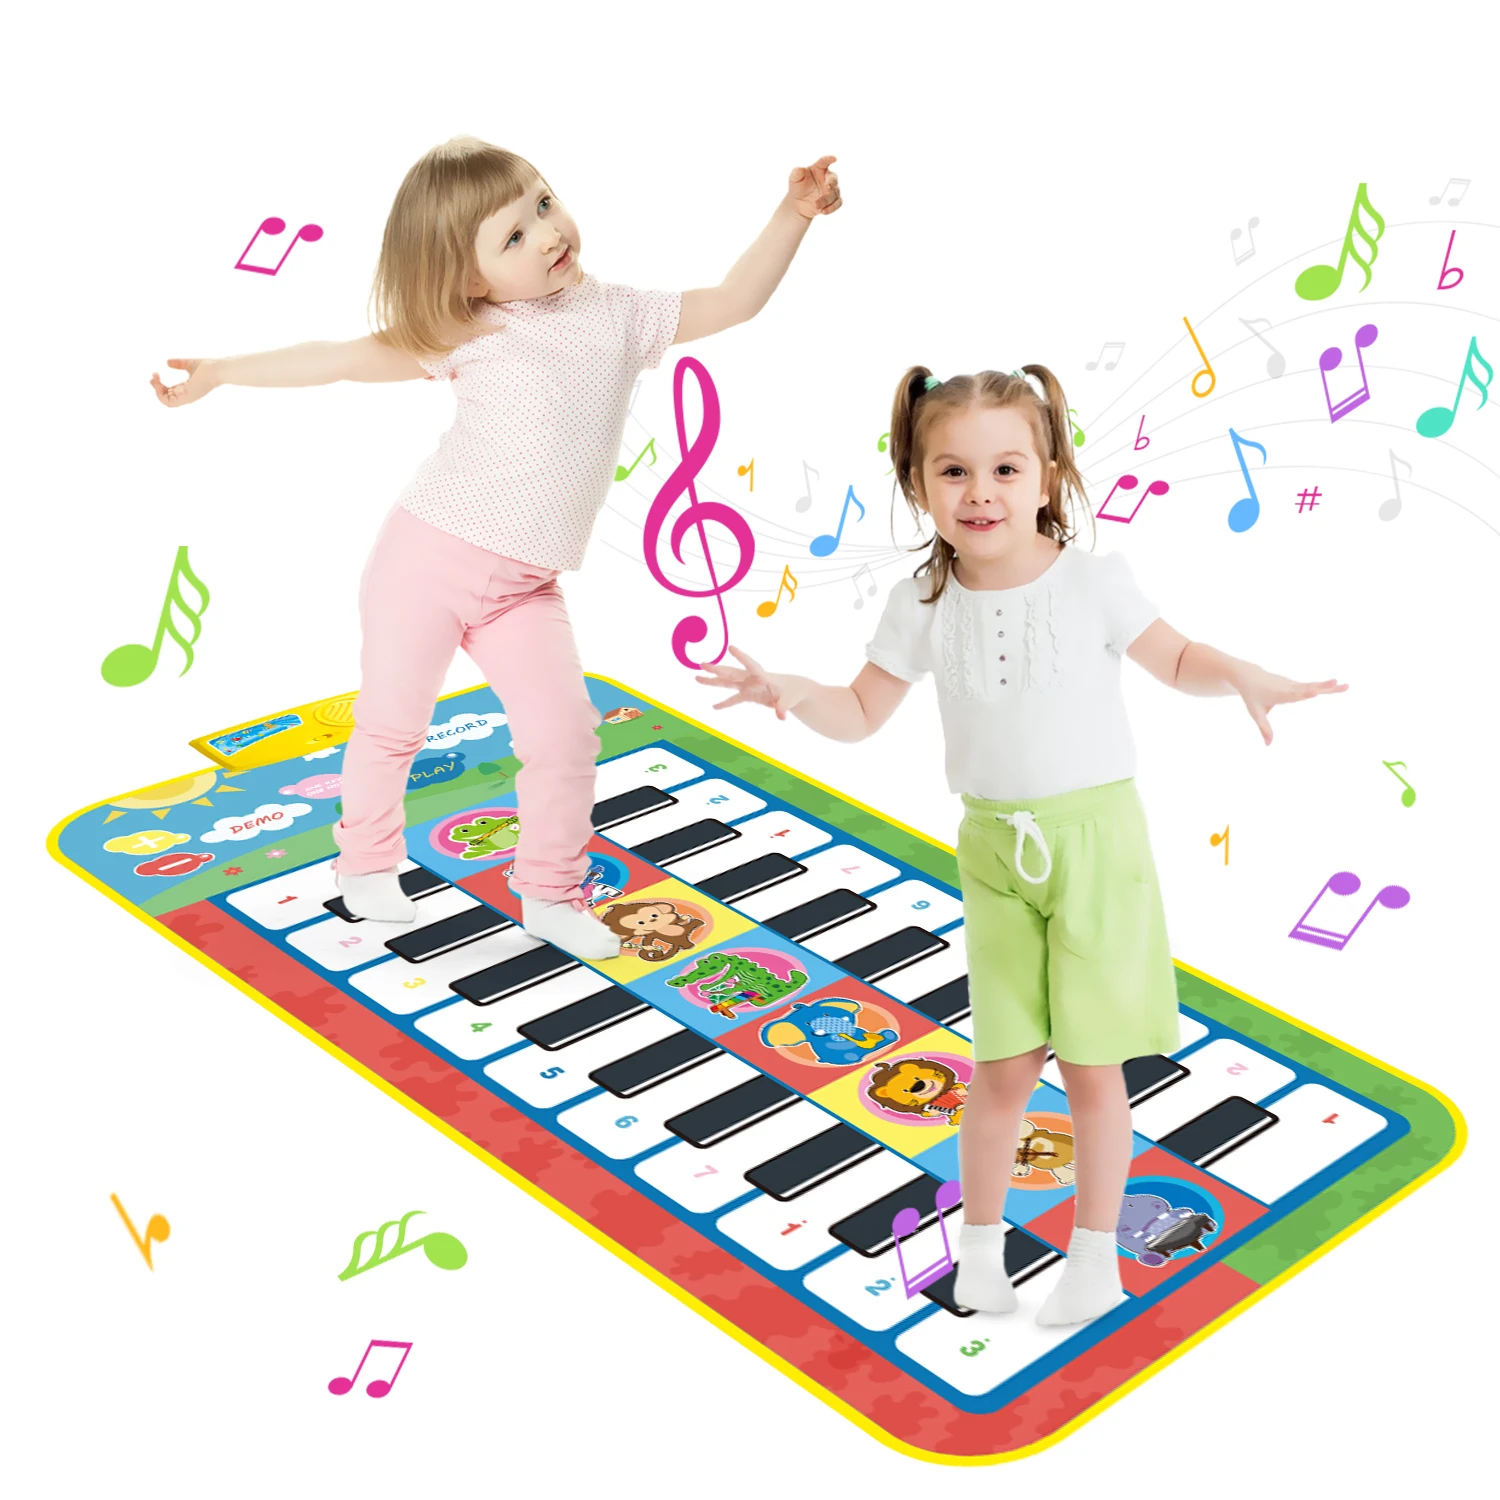 

Детский музыкальный коврик, игрушки, танцевальный коврик для маленьких девочек, Электронный музыкальный коврик, музыкальный коврик с клавиатурой пианино, музыкальный ковер, танцевальные развивающие игрушки